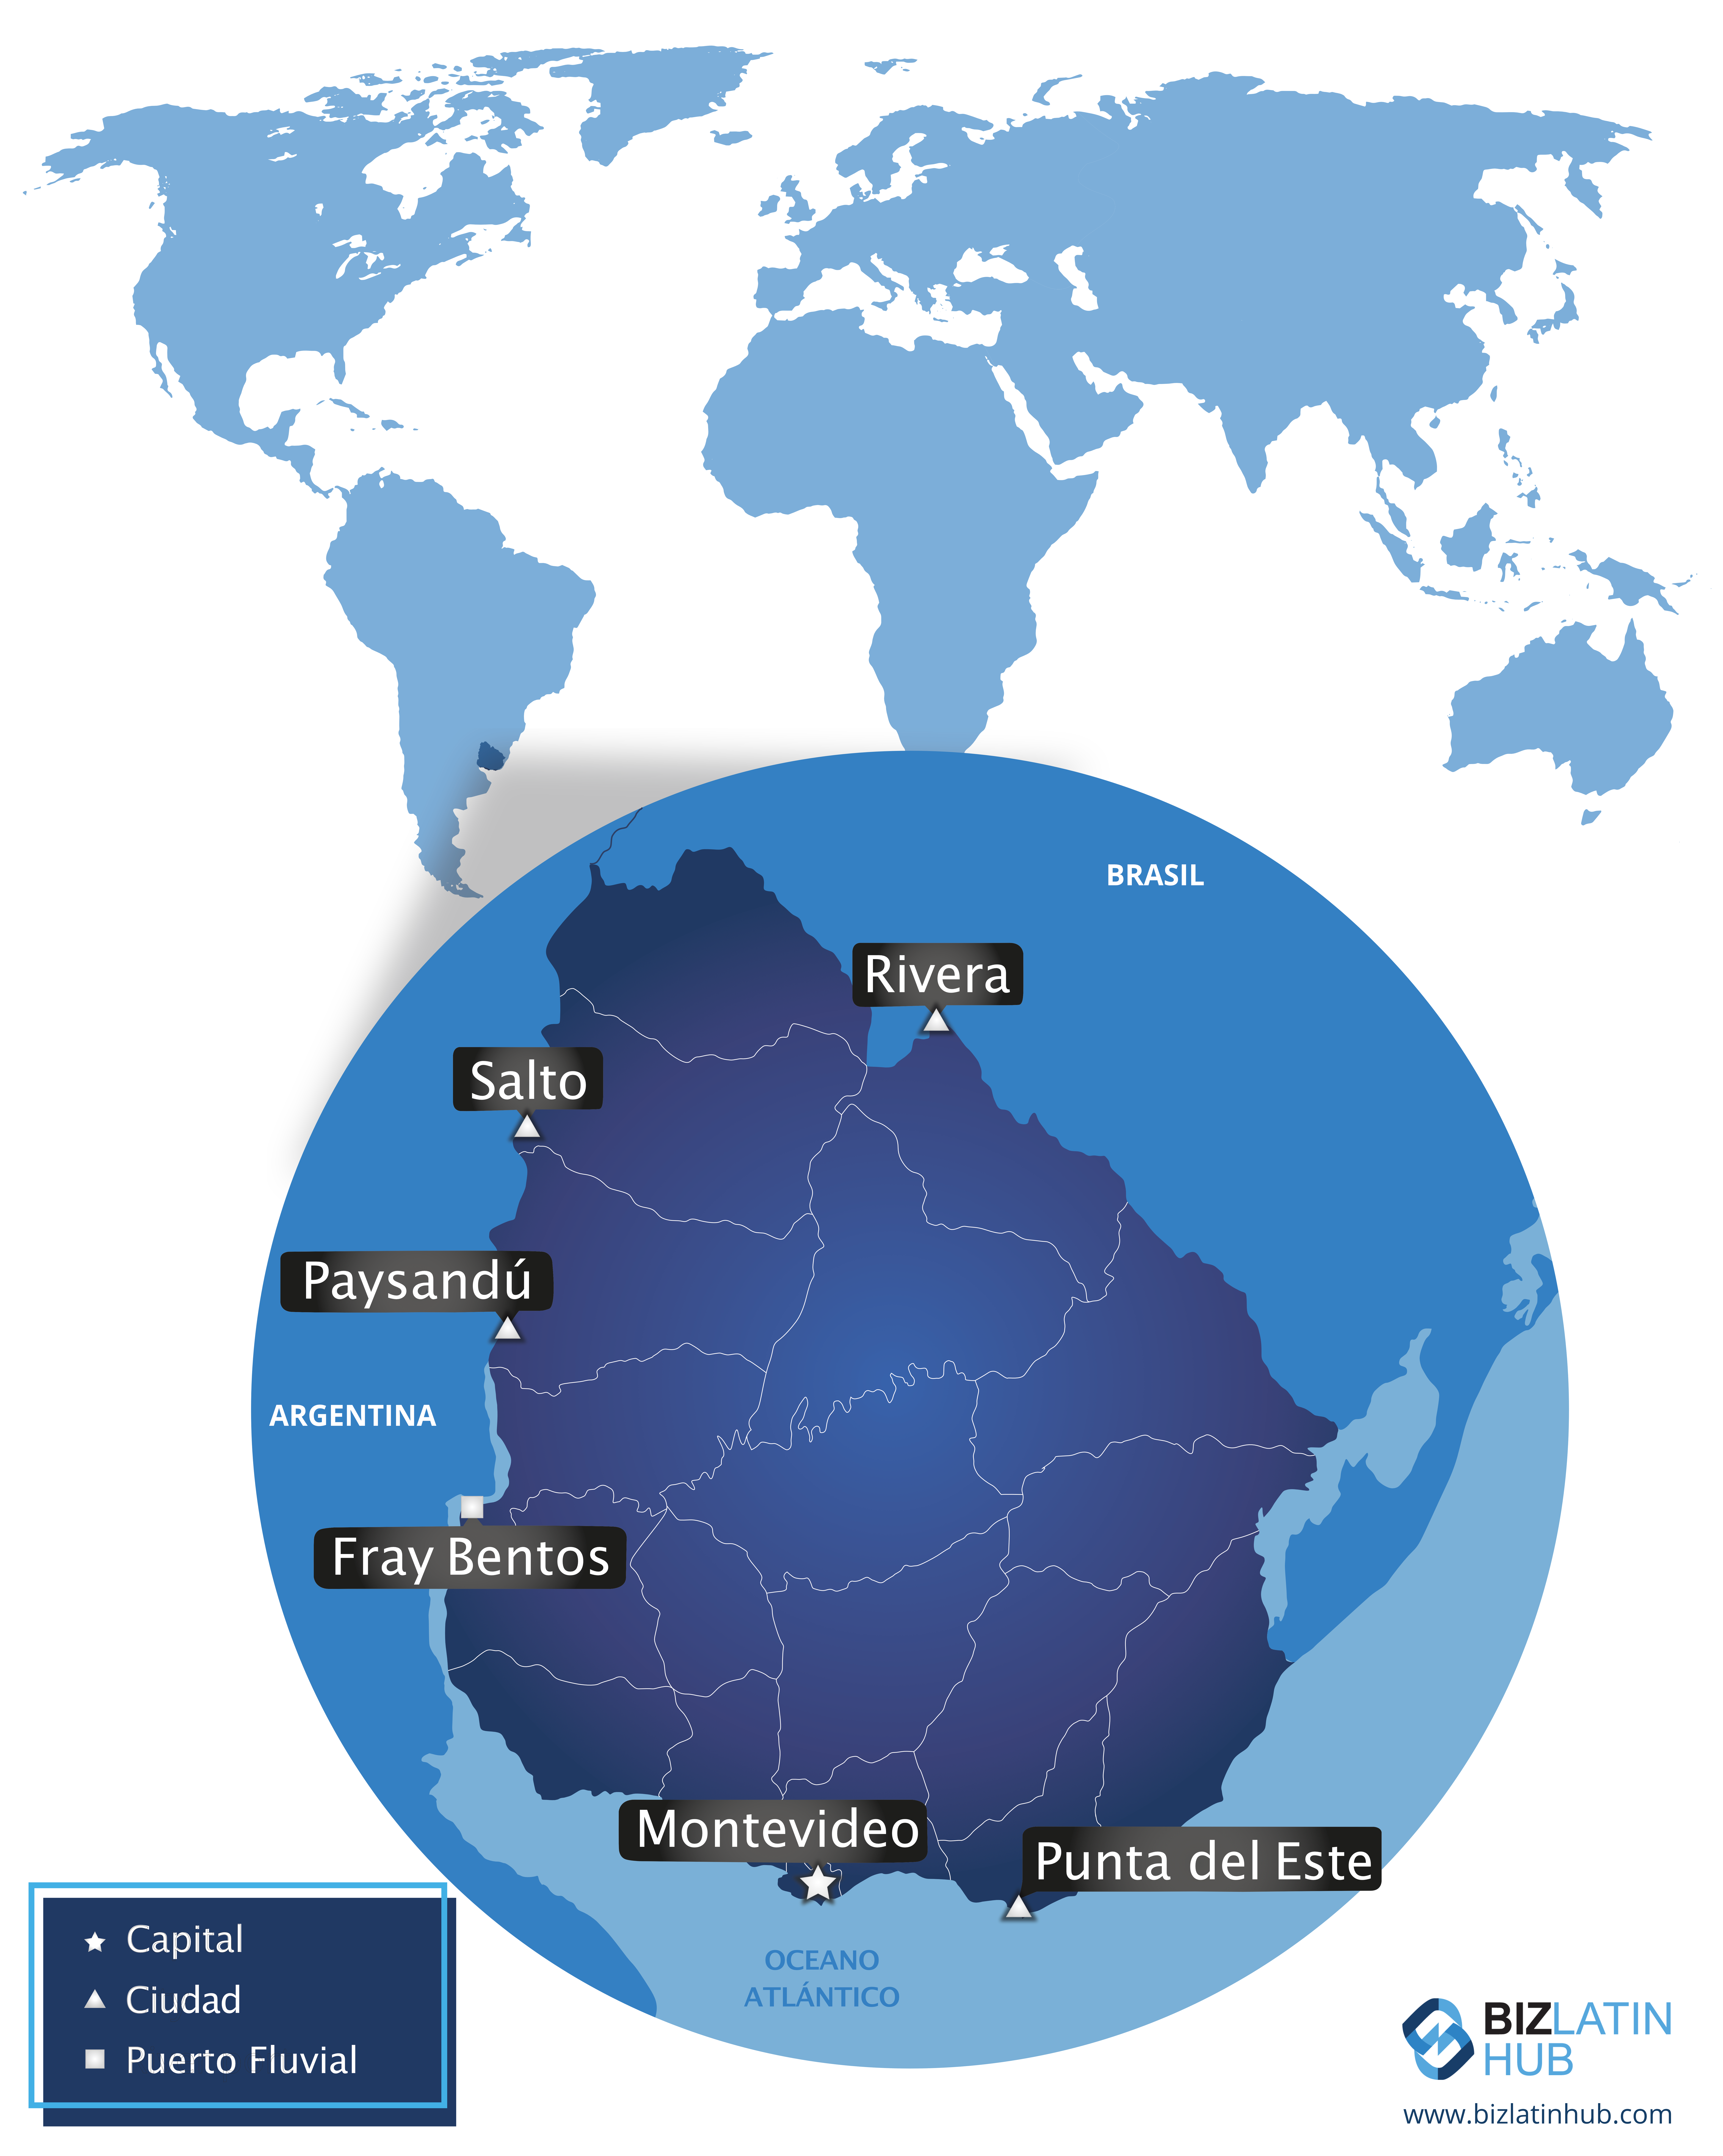 Un mapa de uruguay para un artículo sobre establecer zonas francas en Uruguay.